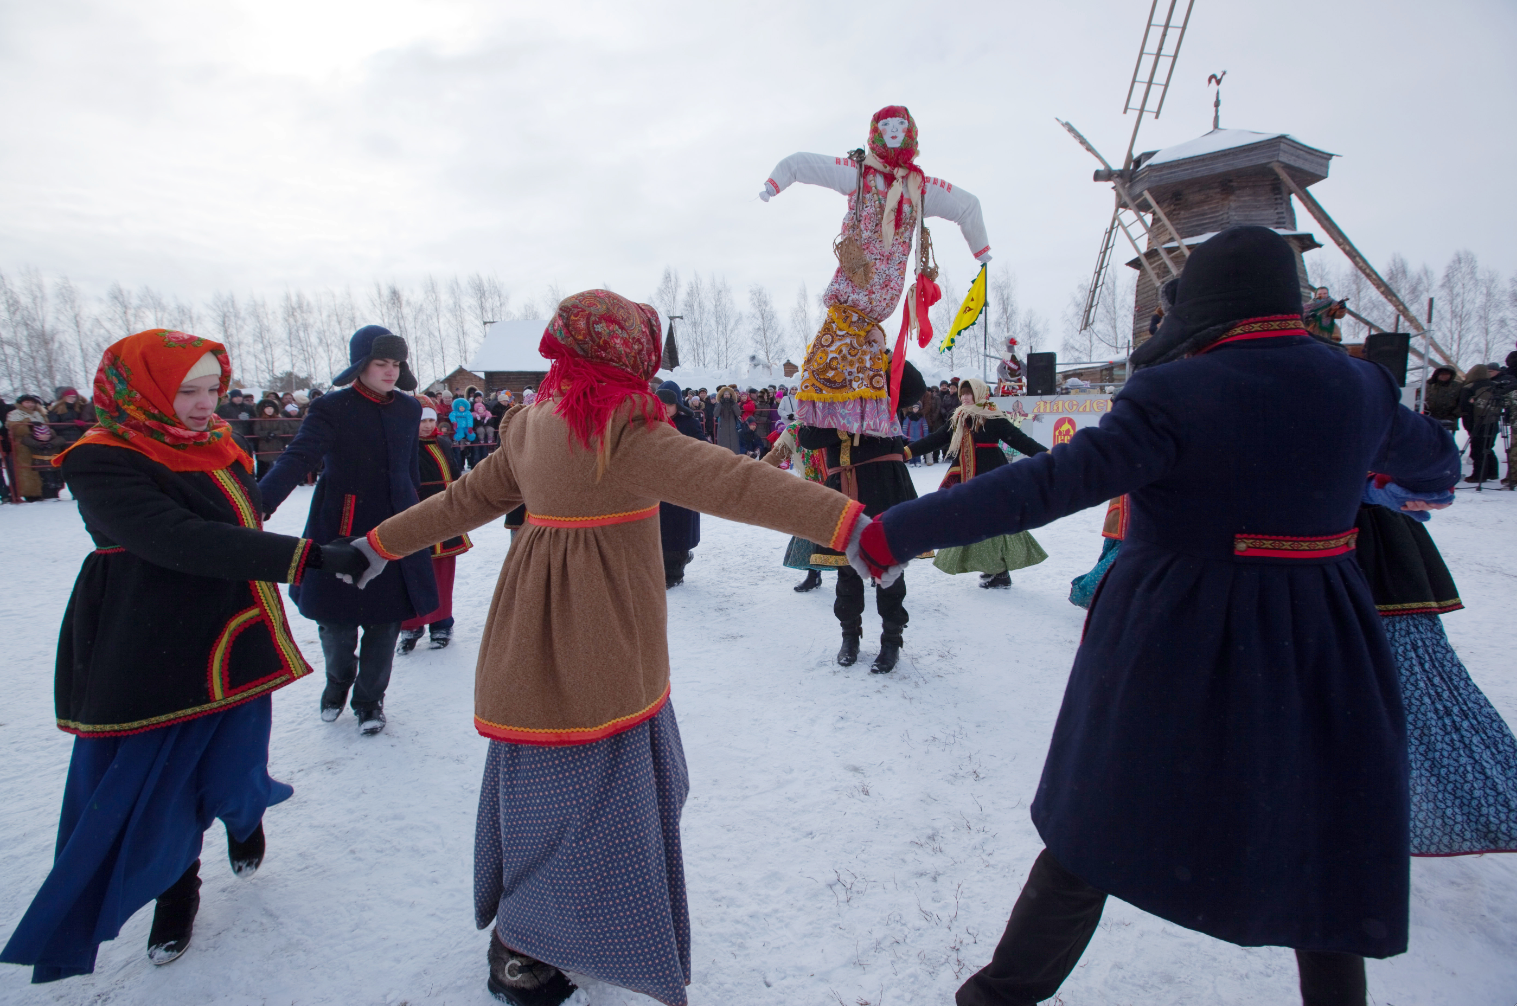 Suzdal residents sing and dance around Maslenitsa scarecrow during Maslenitsa celebration.